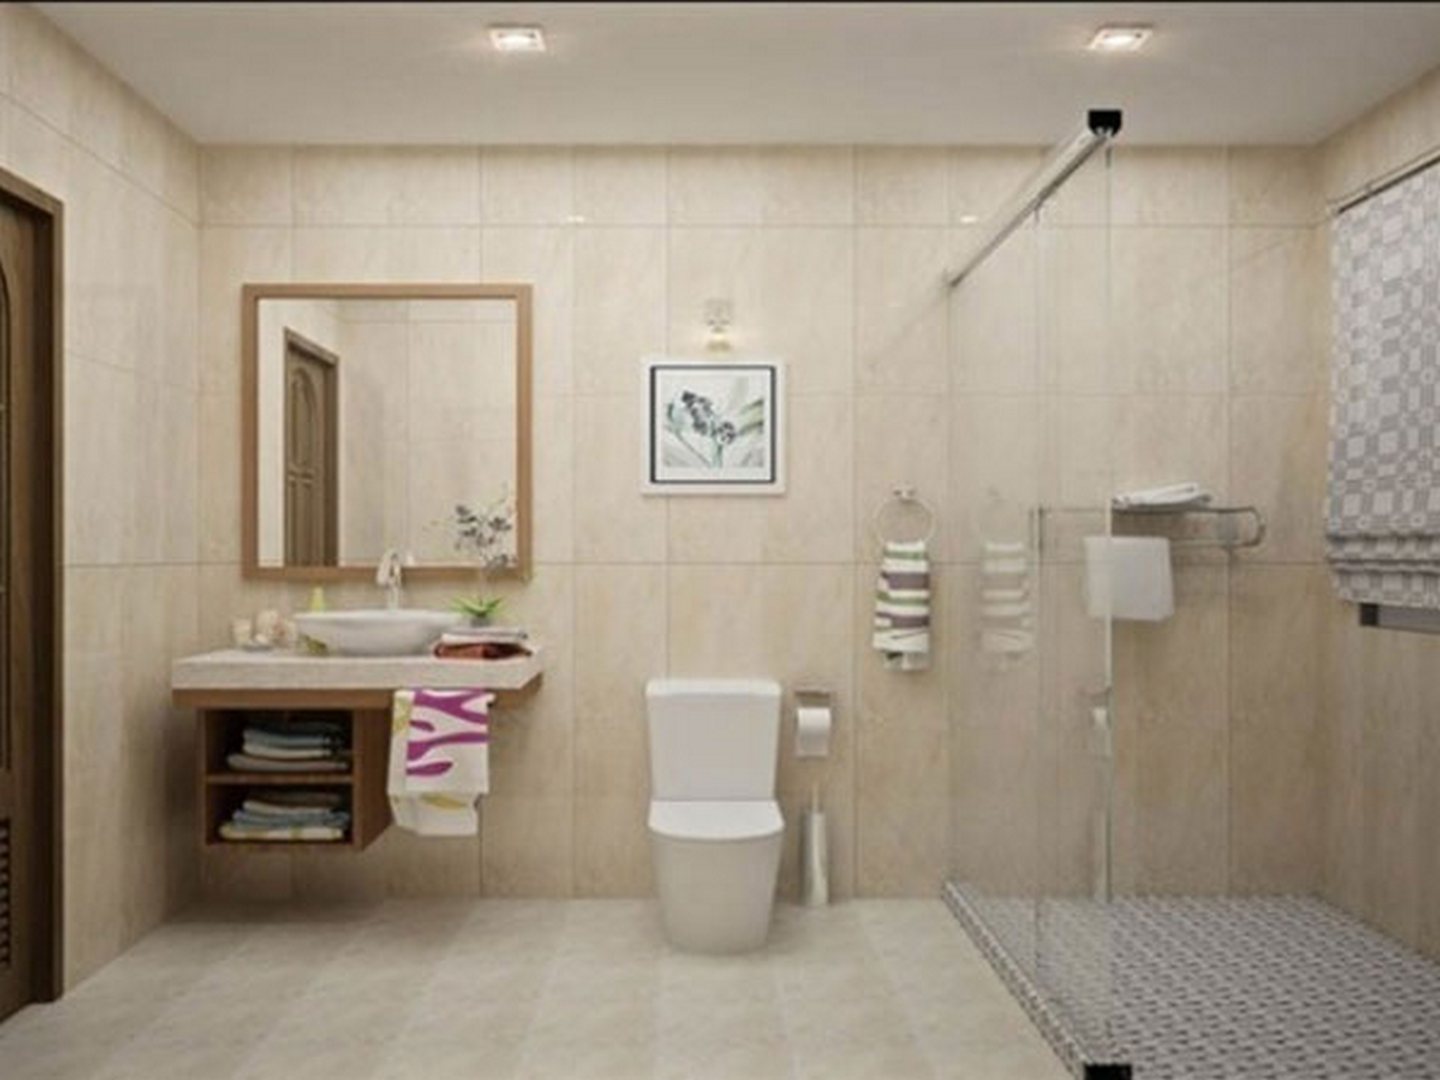 Sắp tới năm 2024, không gian phòng tắm của bạn sẽ thêm rực rỡ với chiều cao treo gương nhà tắm mới. Với những thiết kế đa dạng và tiện lợi, chiều cao này sẽ giúp cho bất kỳ ai trong gia đình cũng có thể dễ dàng sử dụng gương. Sự tiện lợi và thẩm mỹ đã kết hợp thành một, tạo nên sự khác biệt cho không gian phòng tắm của bạn.